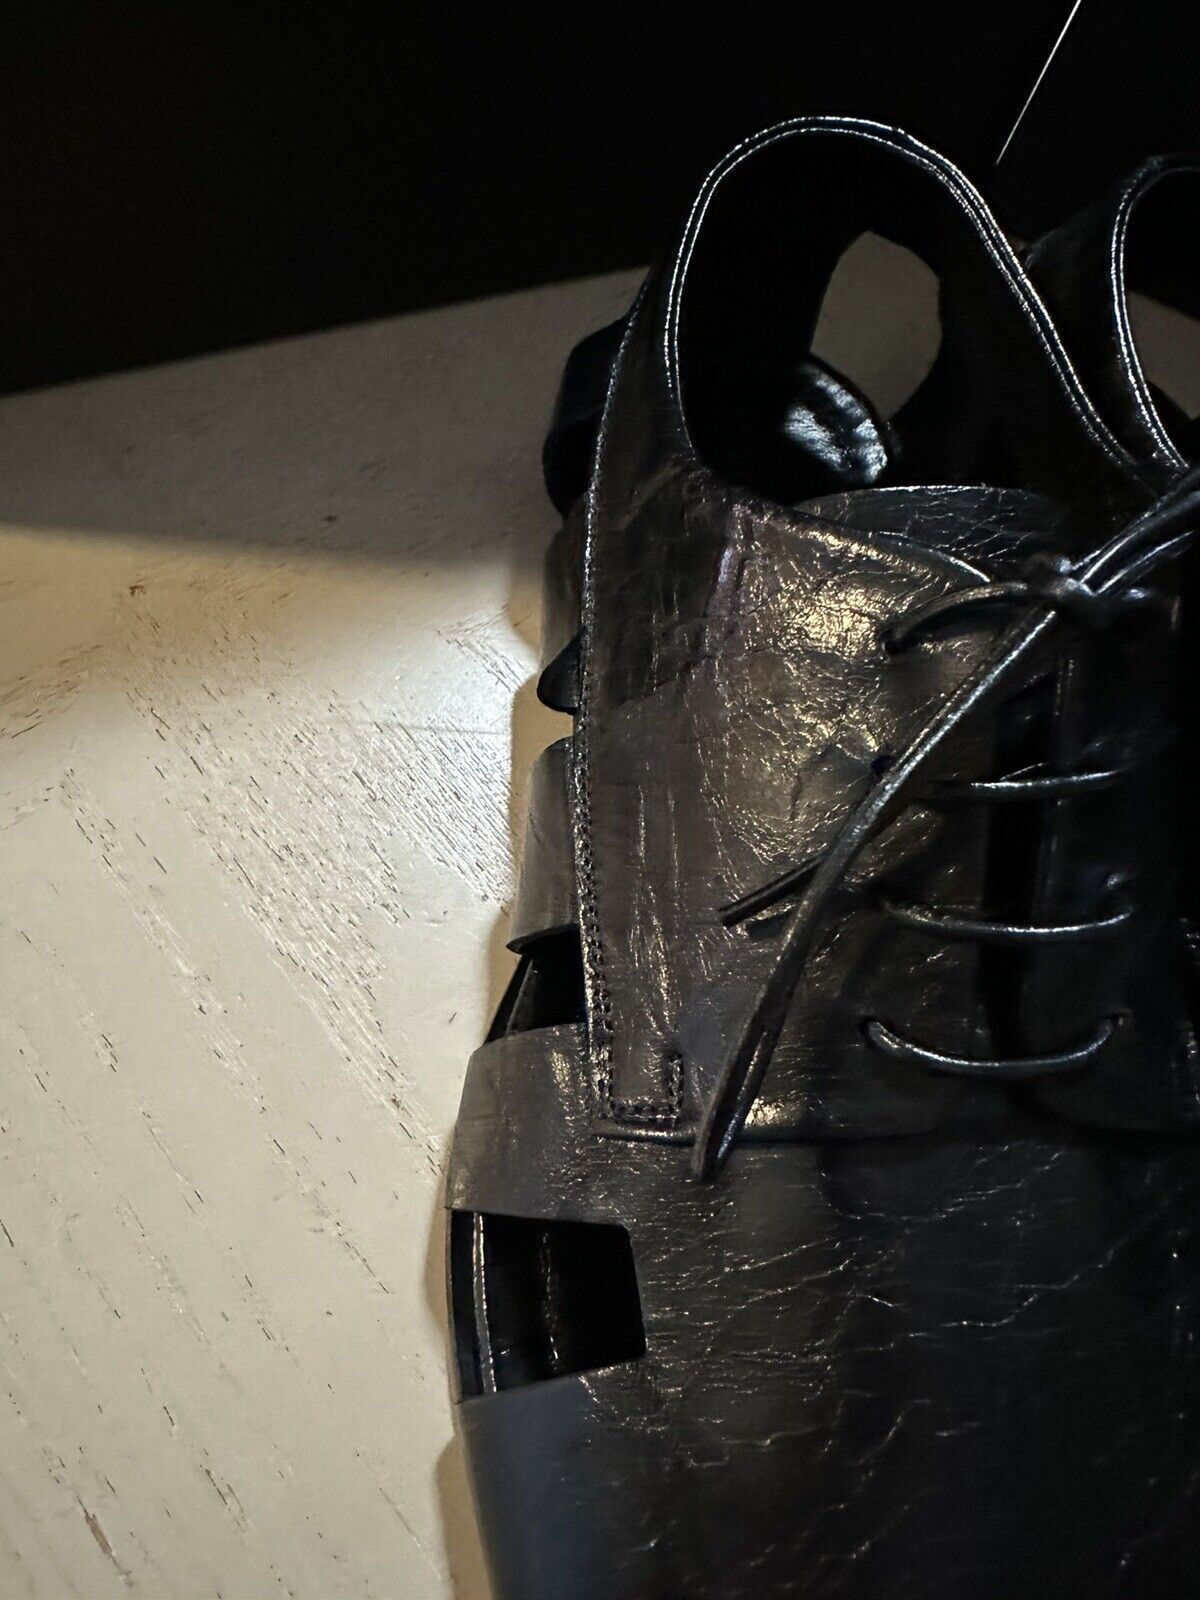 СНИБ $890 Bottega Venetta Мужские кожаные сандалии класса люкс черные 10 US/43